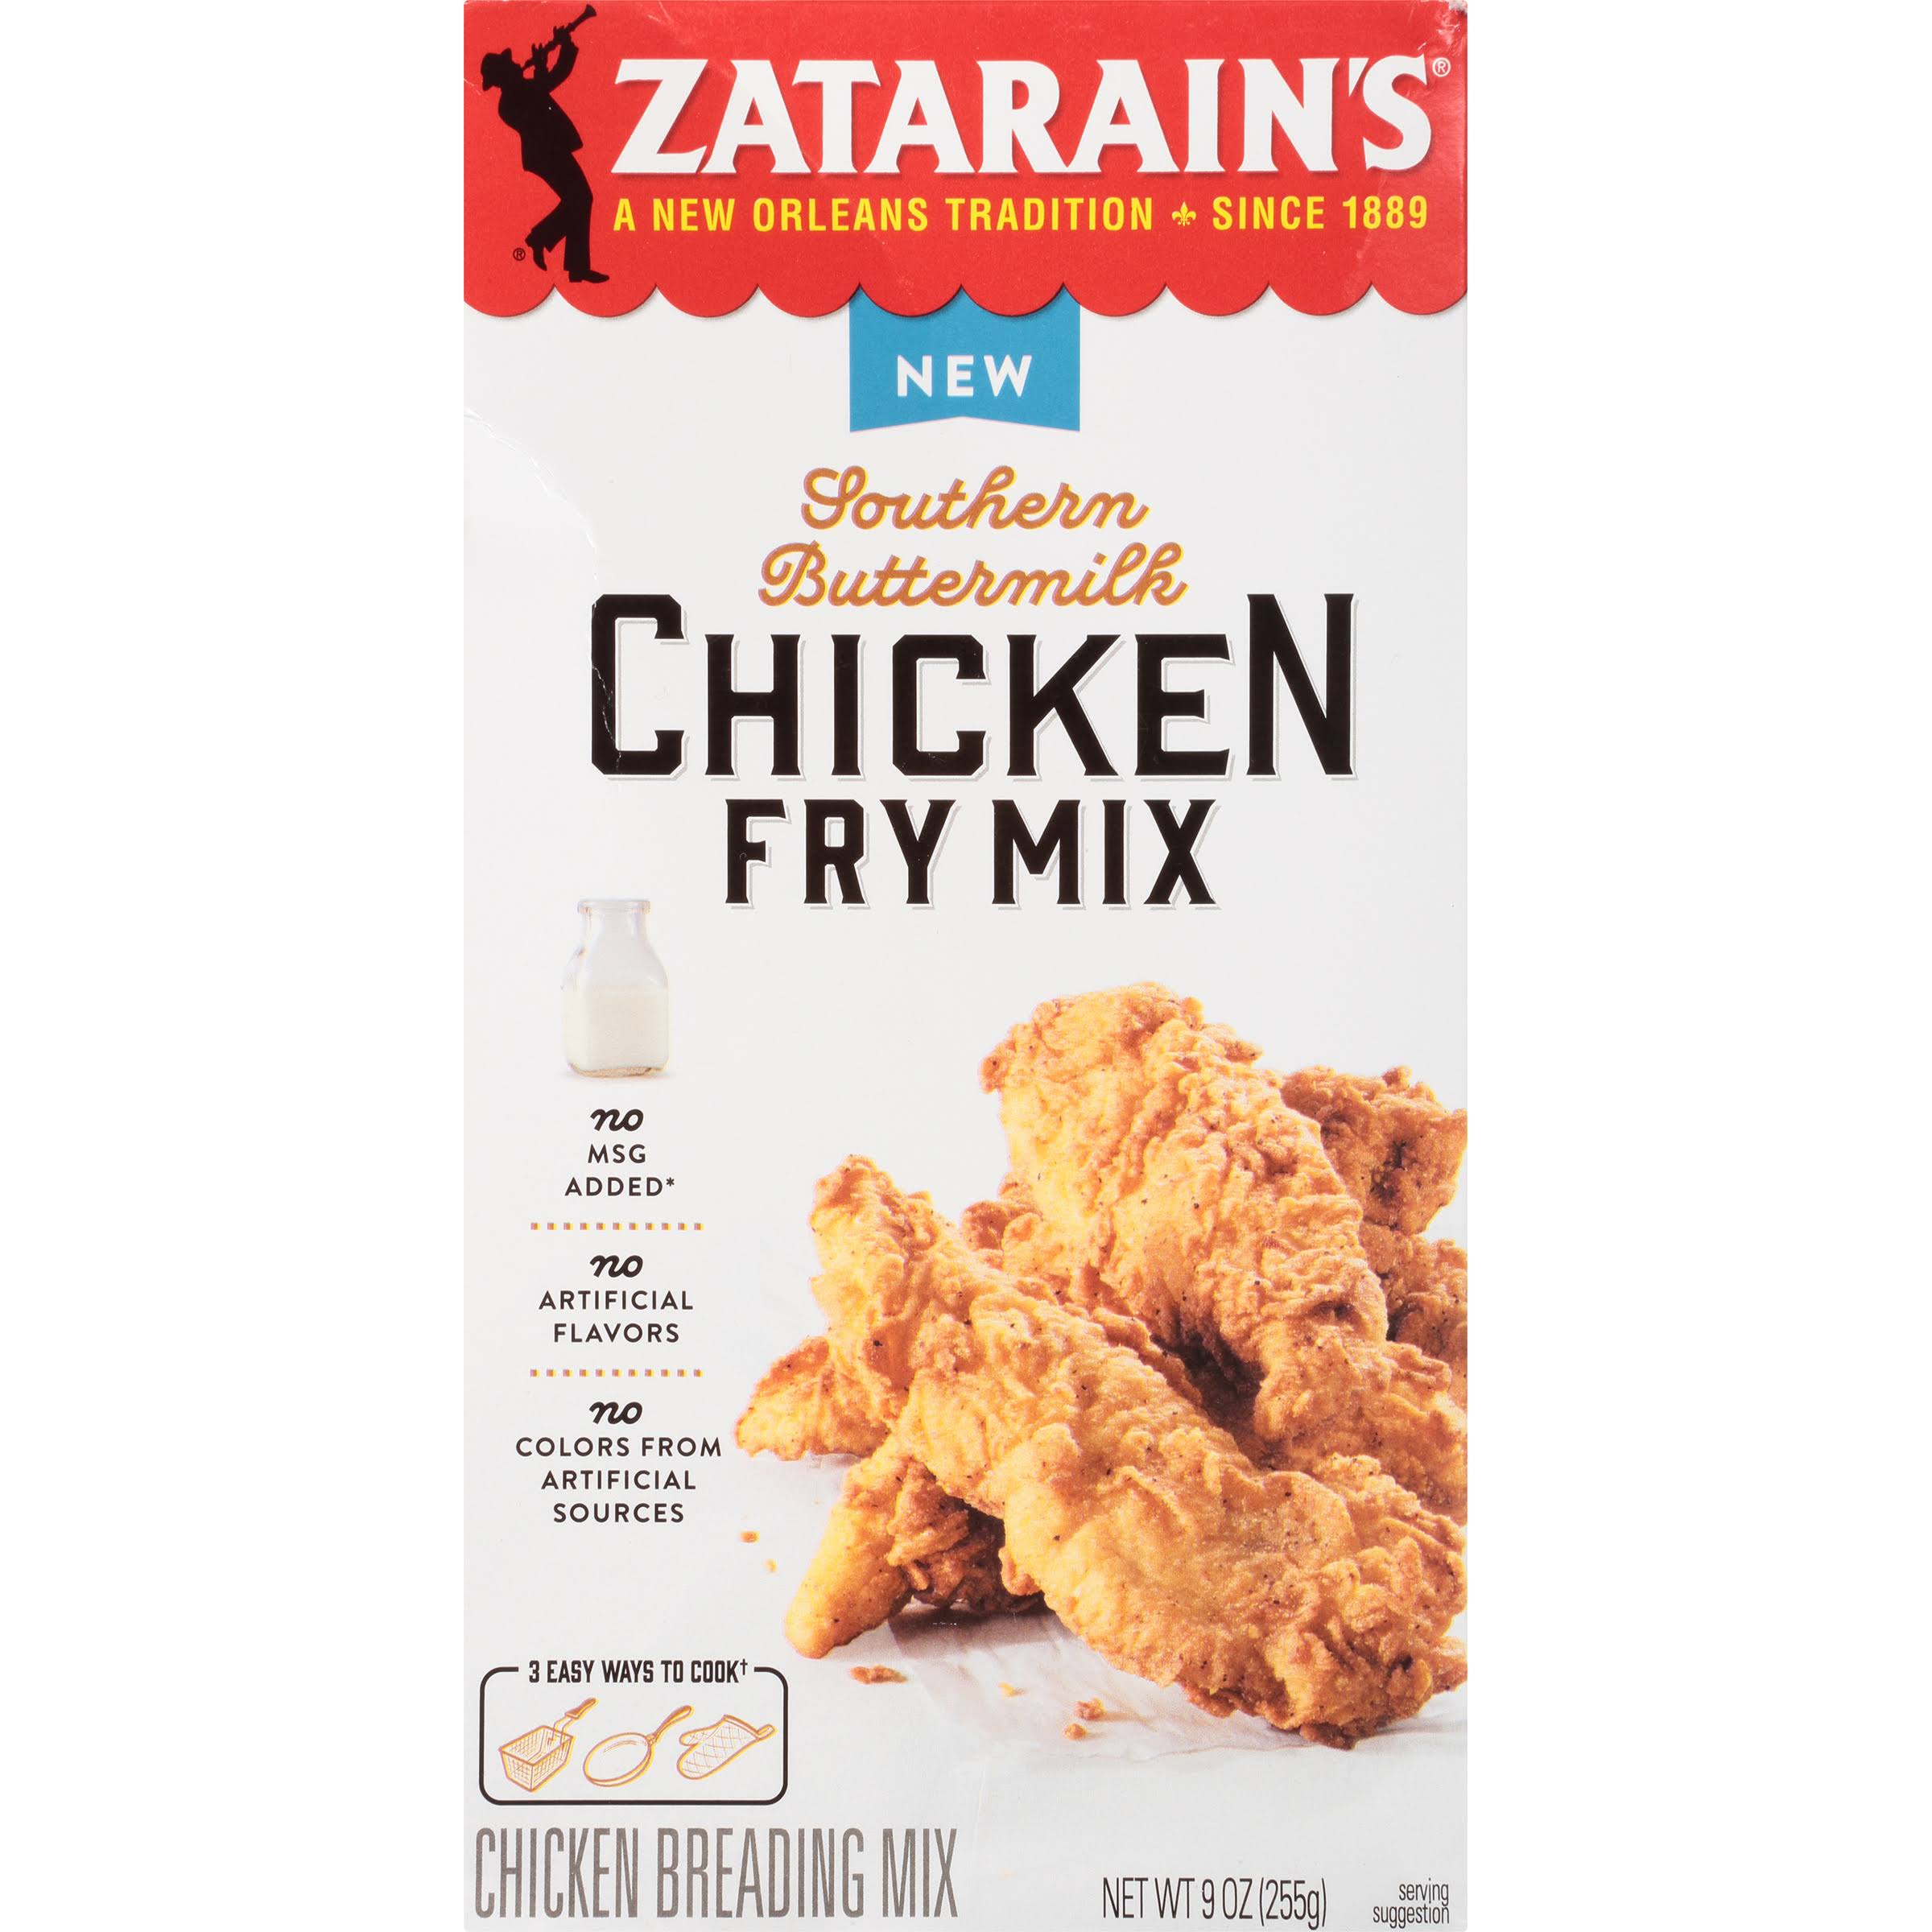 Zatarain's Southern Buttermilk Chicken Fry Mix